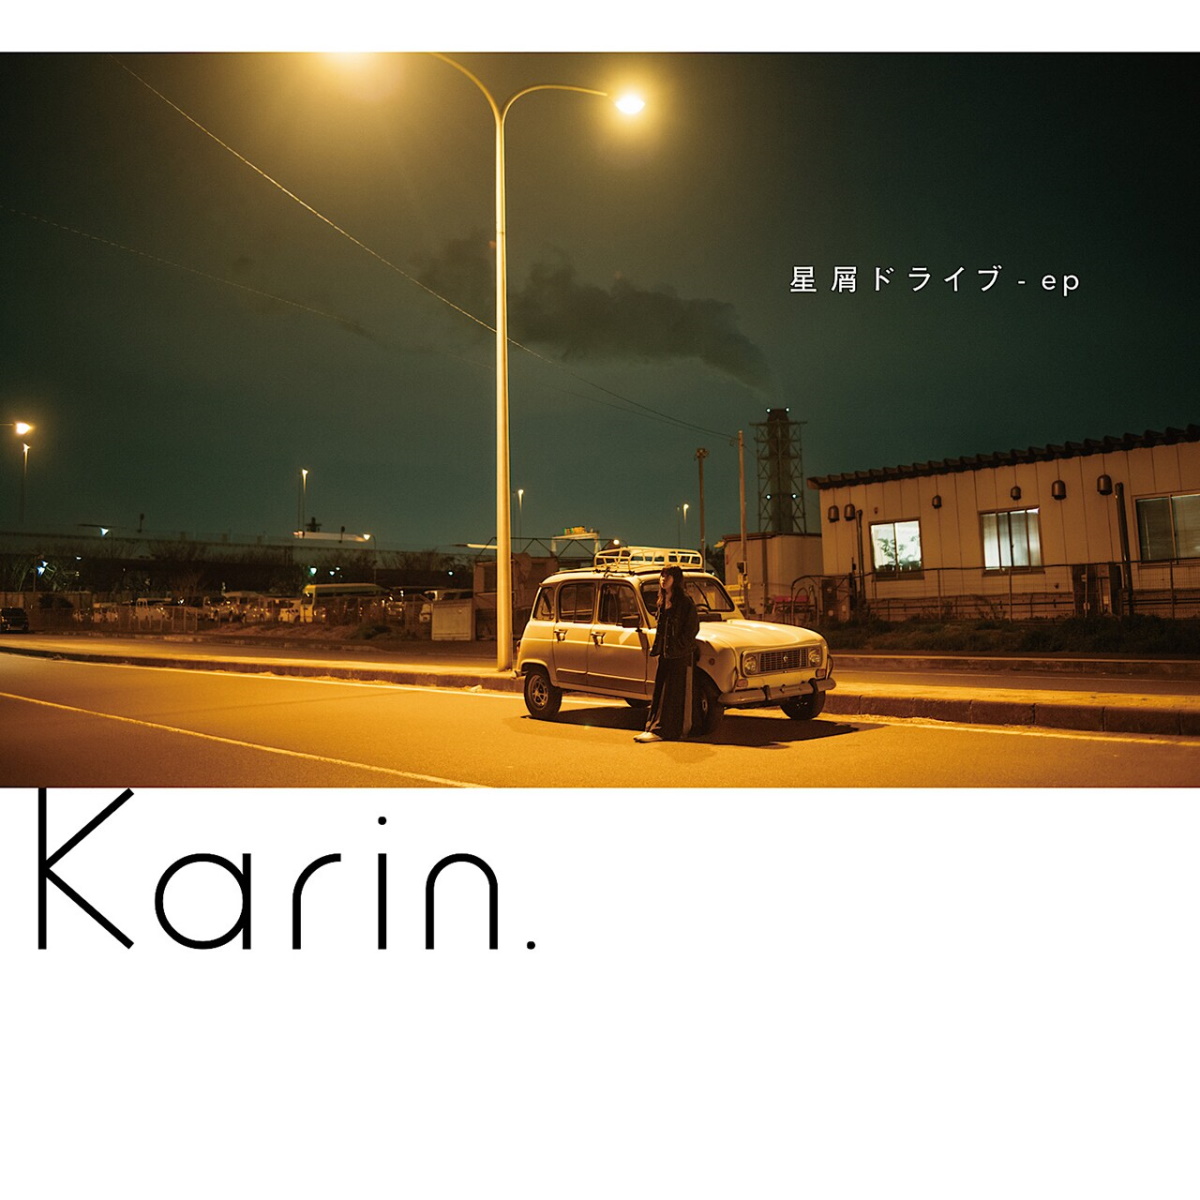 『Karin. - 永遠が続くのは 歌詞』収録の『星屑ドライブ - ep』ジャケット